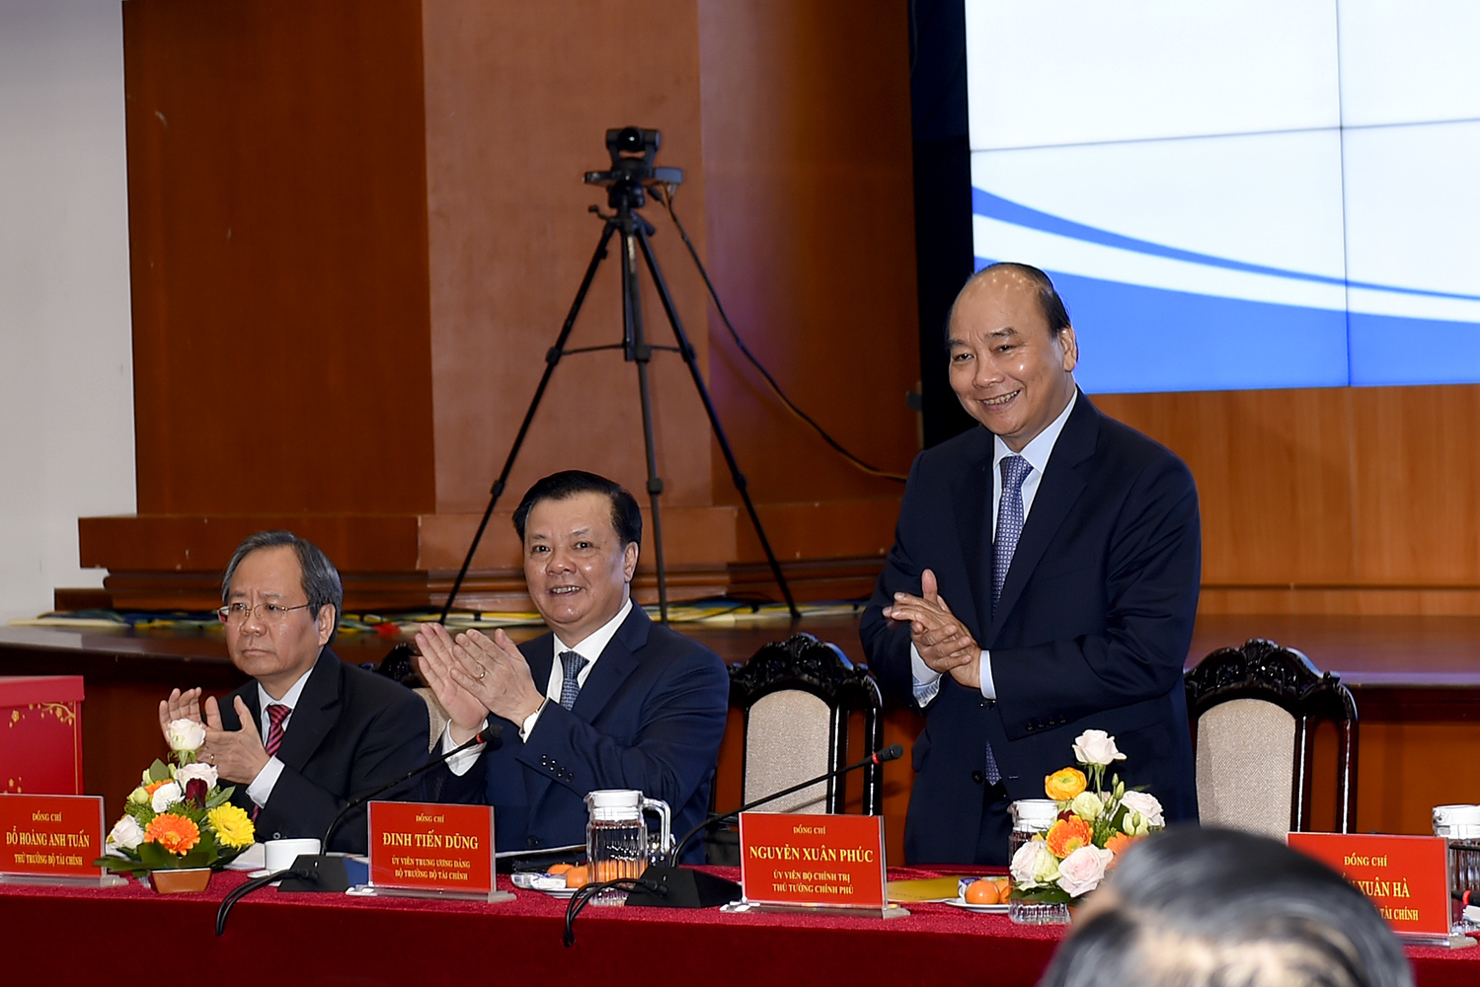 Thủ tướng Chính phủ Nguyễn Xuân Phúc đến dự và chỉ đạo Hội nghị trực tuyến tổng kết công tác tài chính – ngân sách nhà nước năm 2019, triển khai nhiệm vụ tài chính – ngân sách nhà nước năm 2020 của Bộ Tài chính.